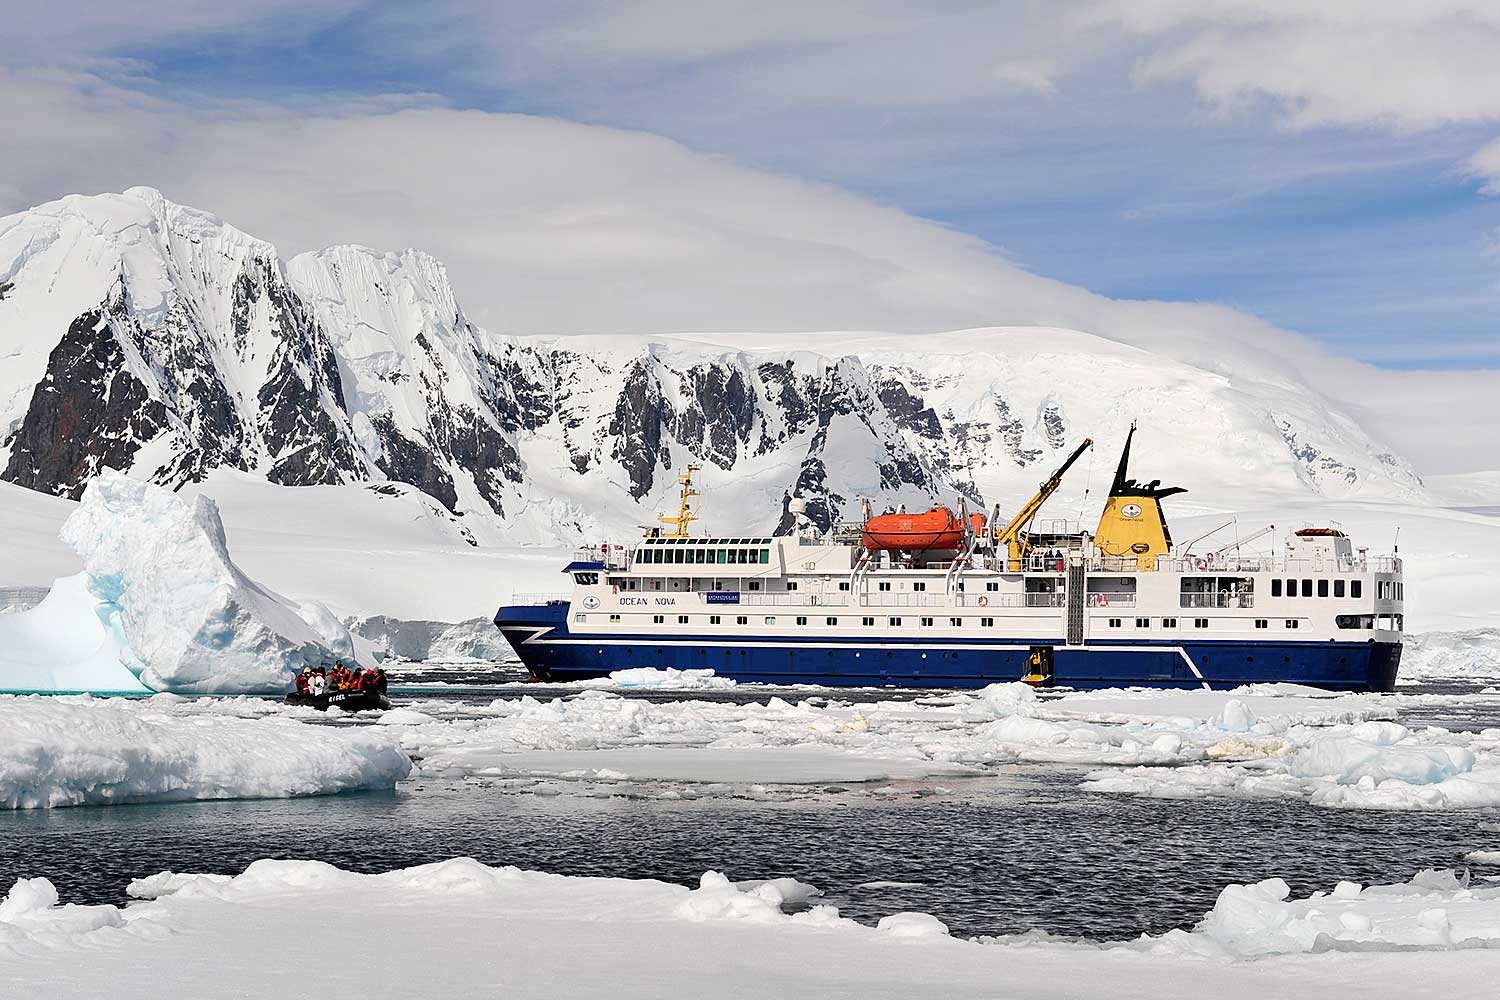 MV Ocean Nova expedition ship